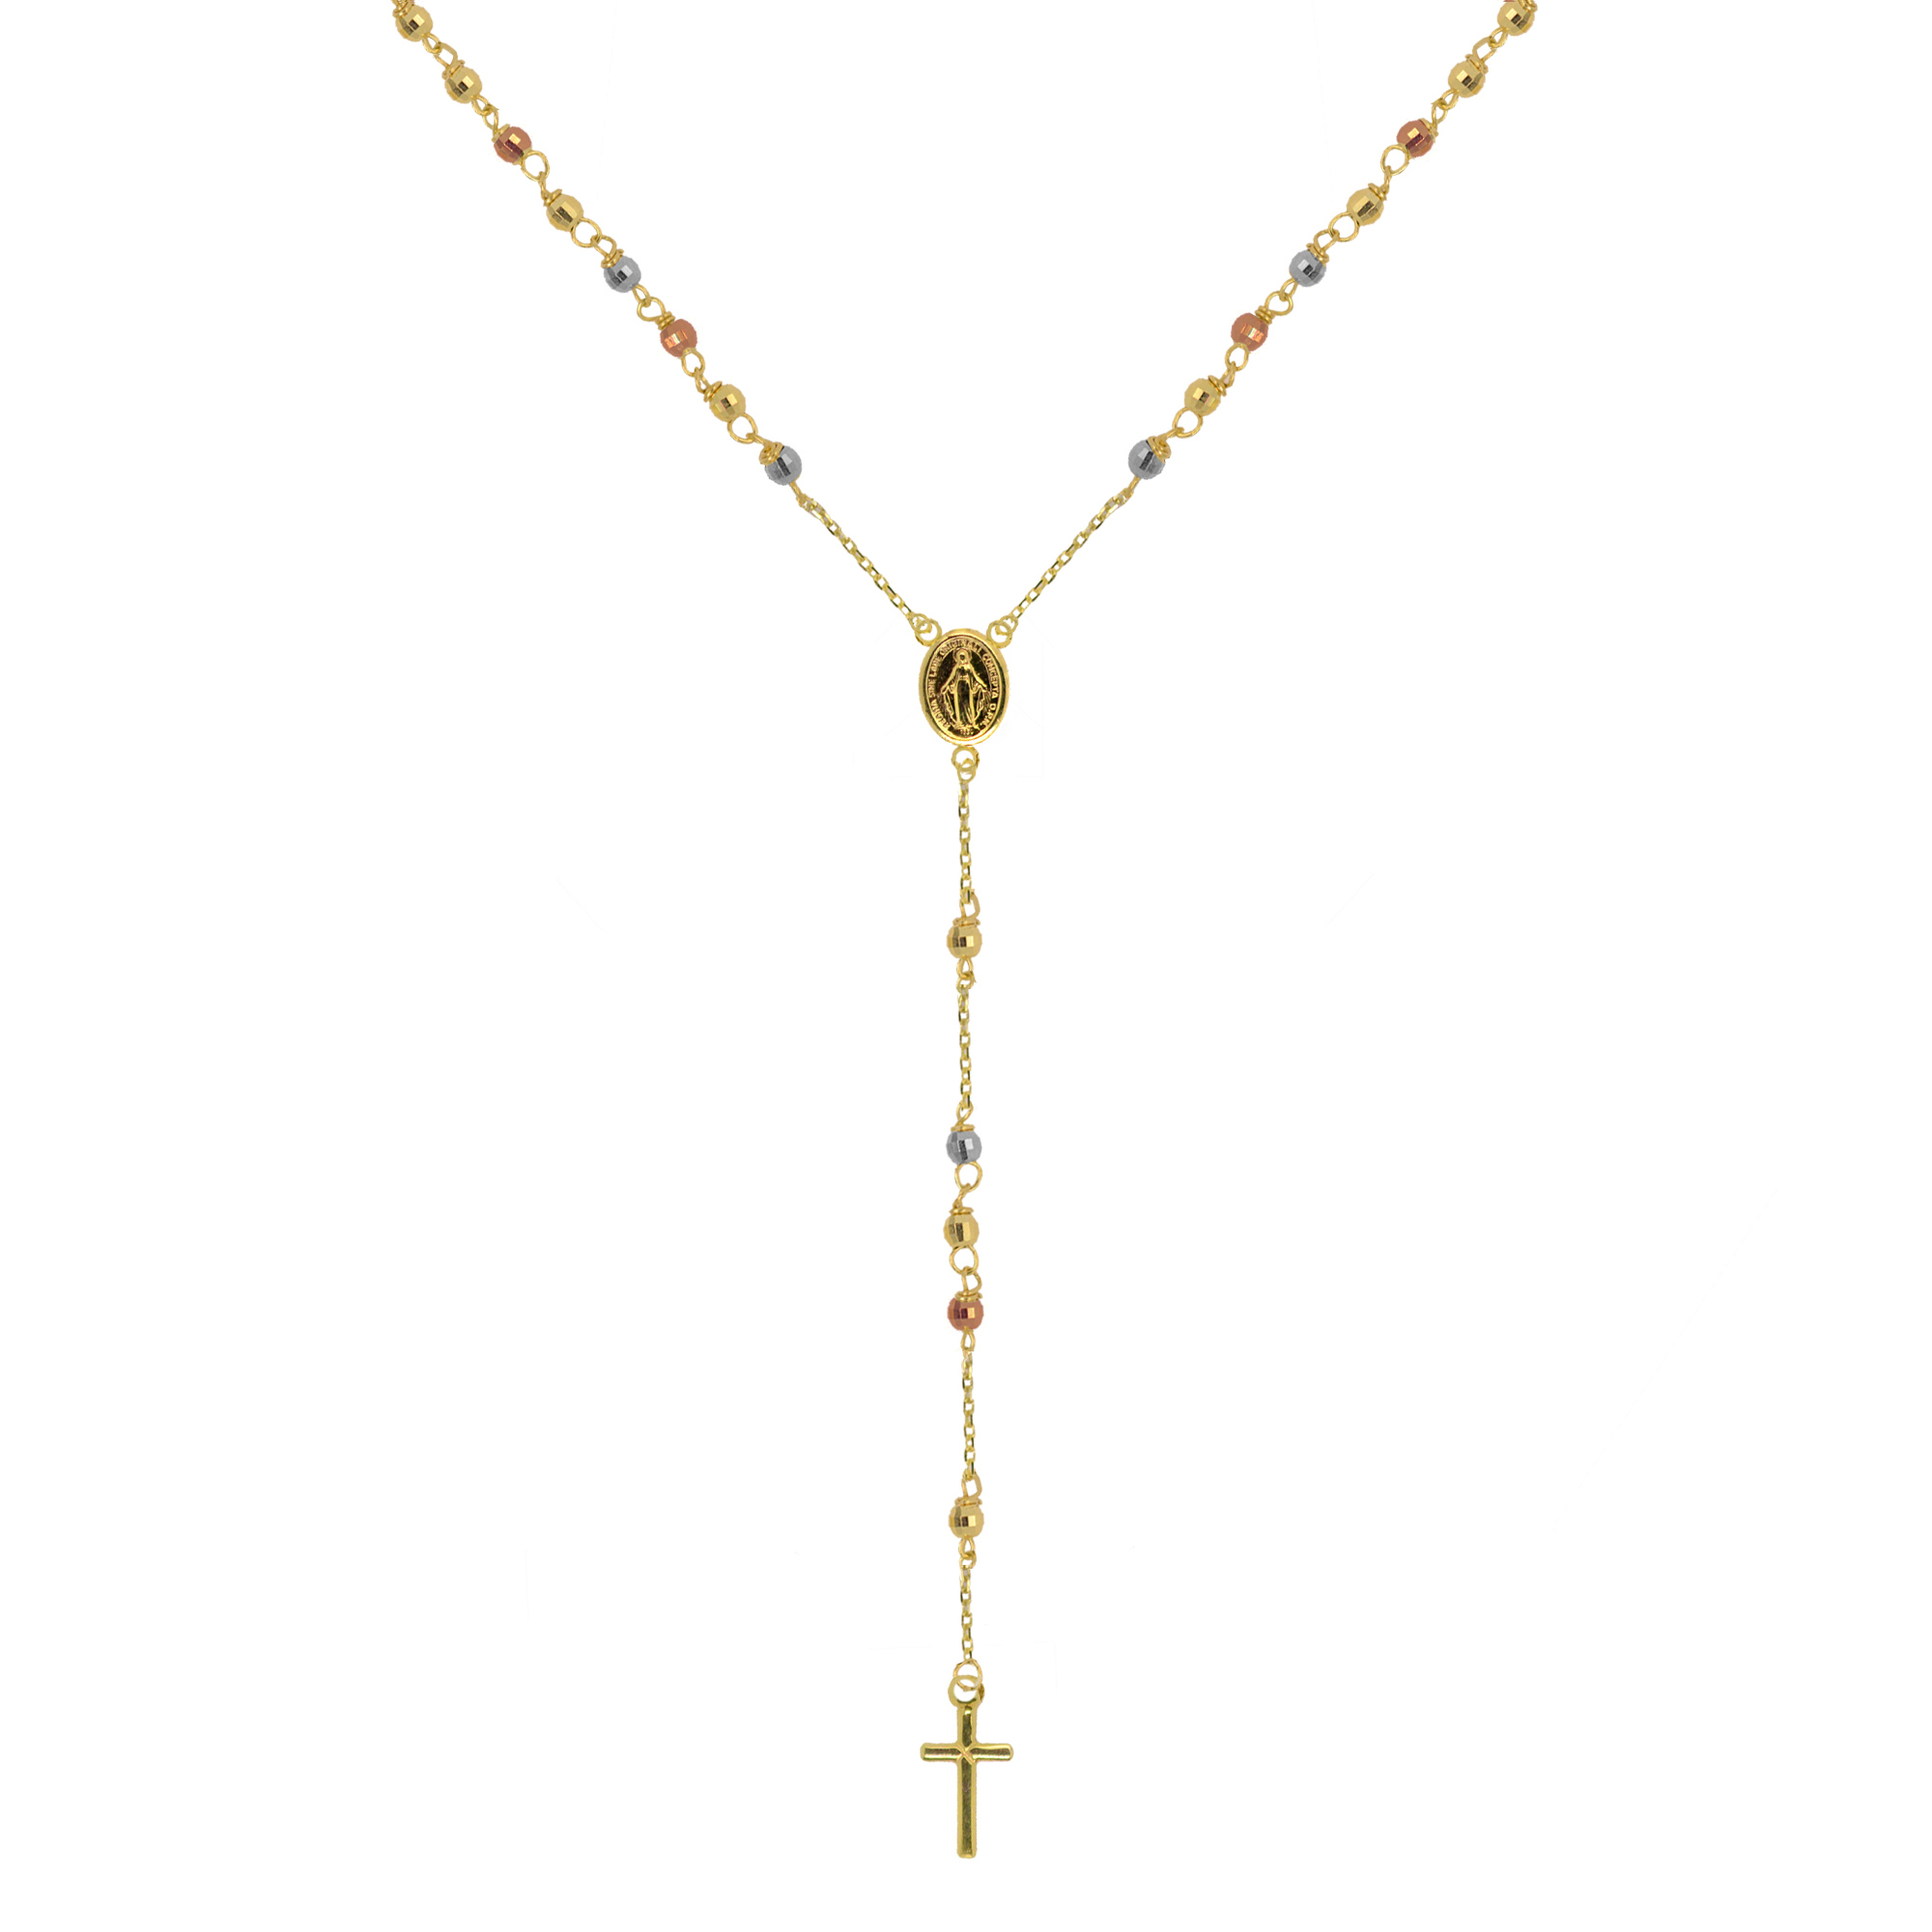 Evolution Group Zlatý 14 karátový náhrdelník růženec s křížem a medailonkem s Pannou Marií RŽ14 multi